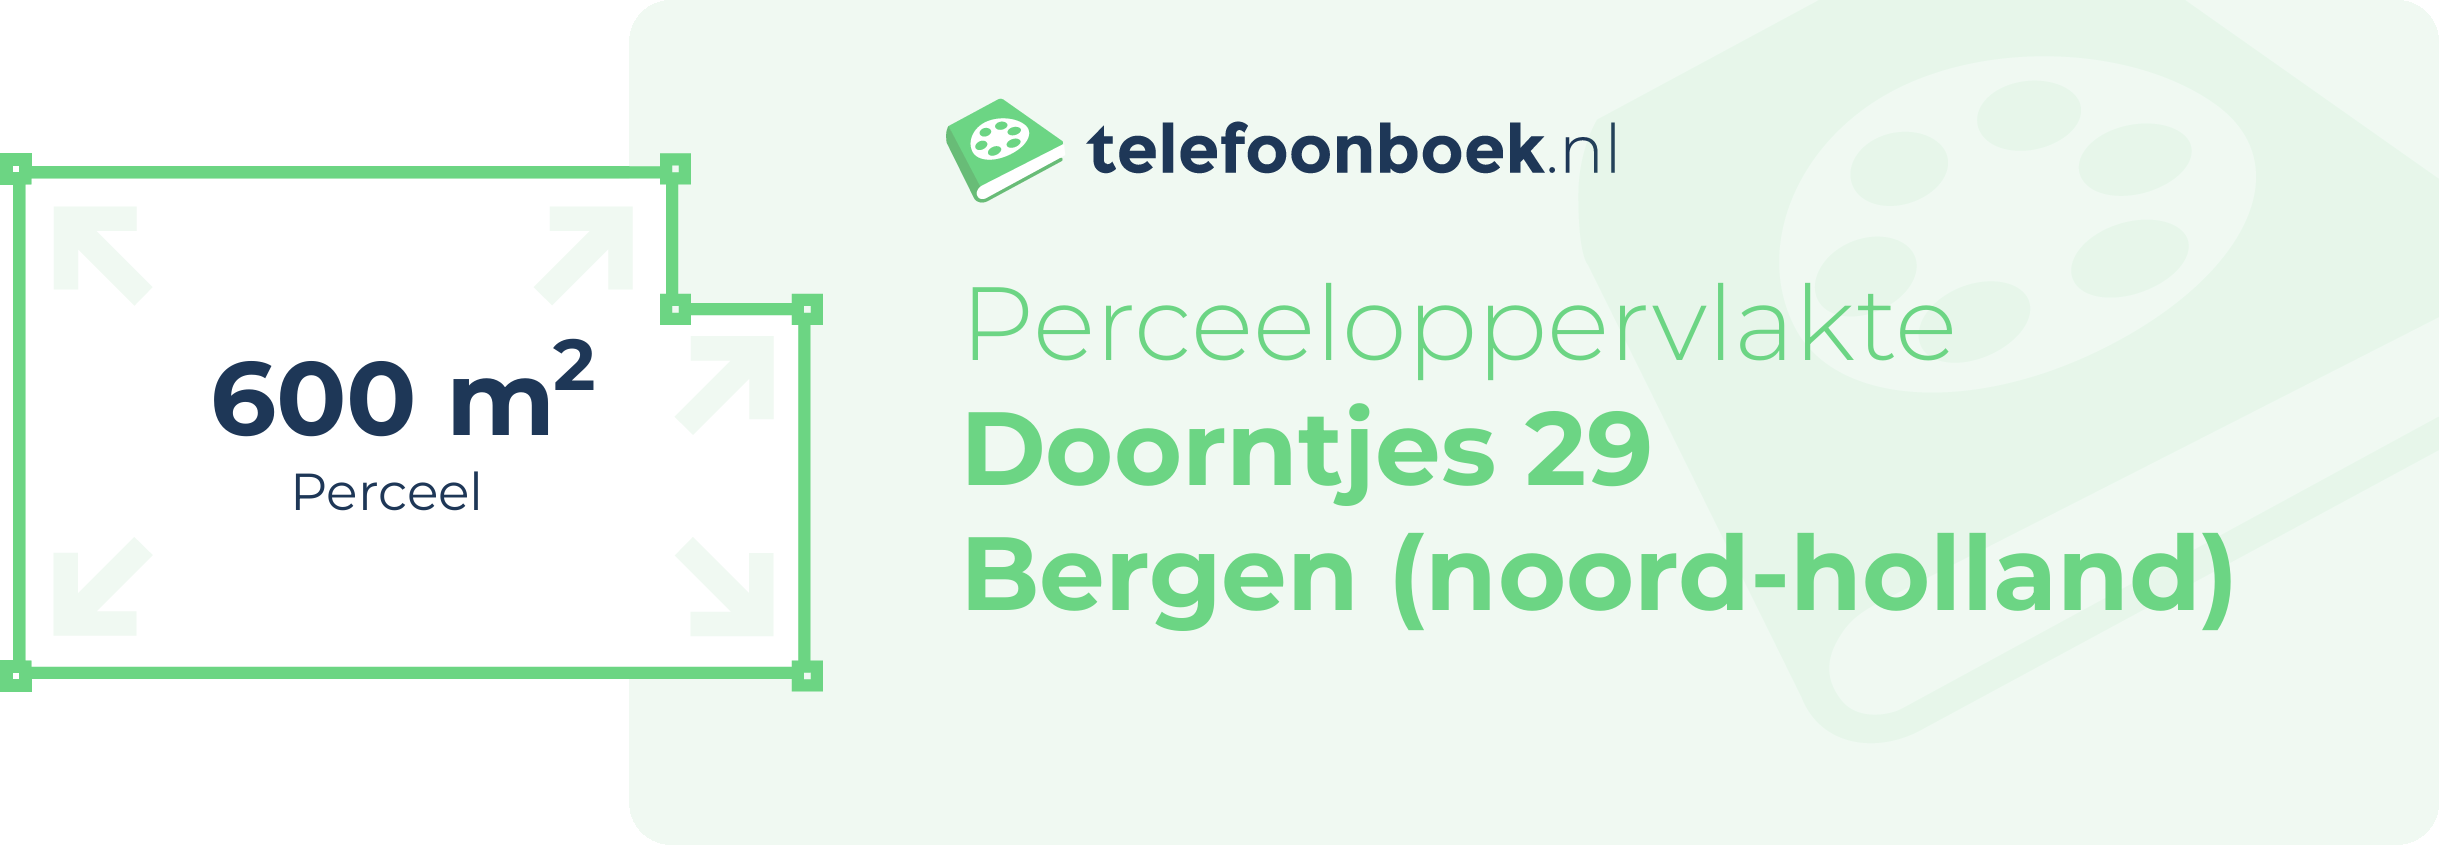 Perceeloppervlakte Doorntjes 29 Bergen (Noord-Holland)